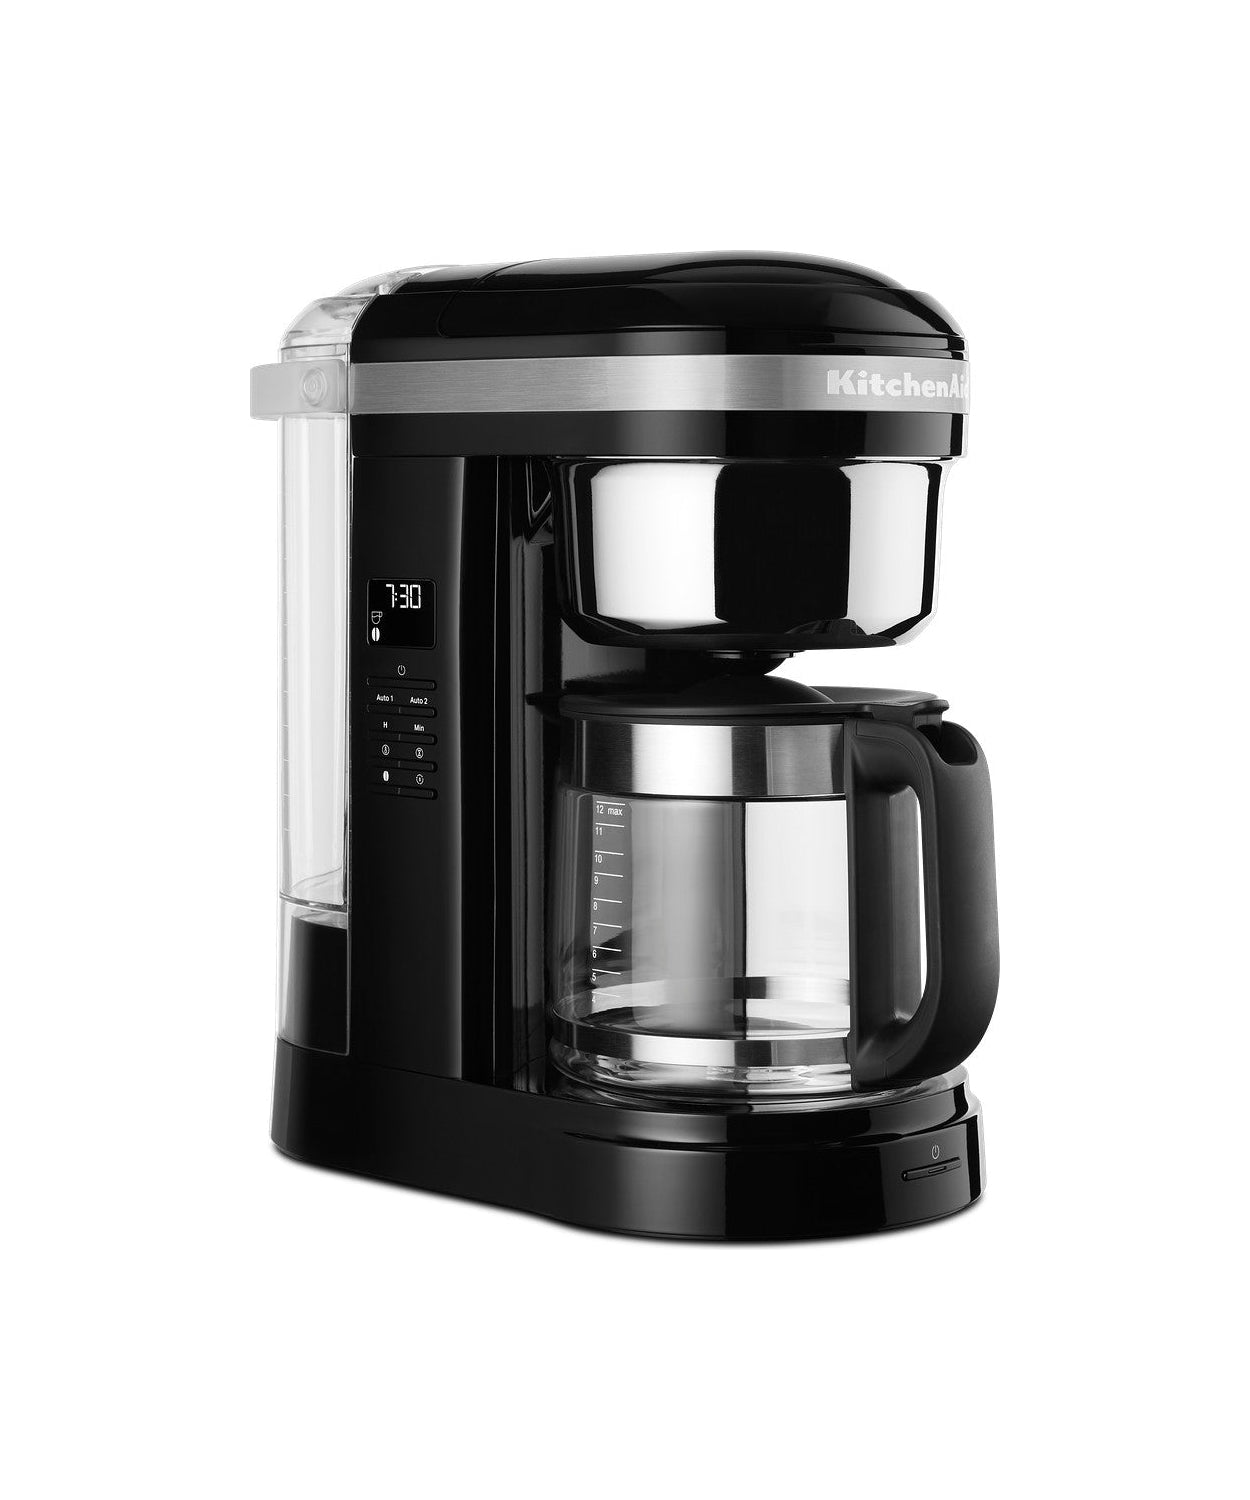 KitchenAid 5KCM1209 Kaffemaskine 1,7 L, Sort